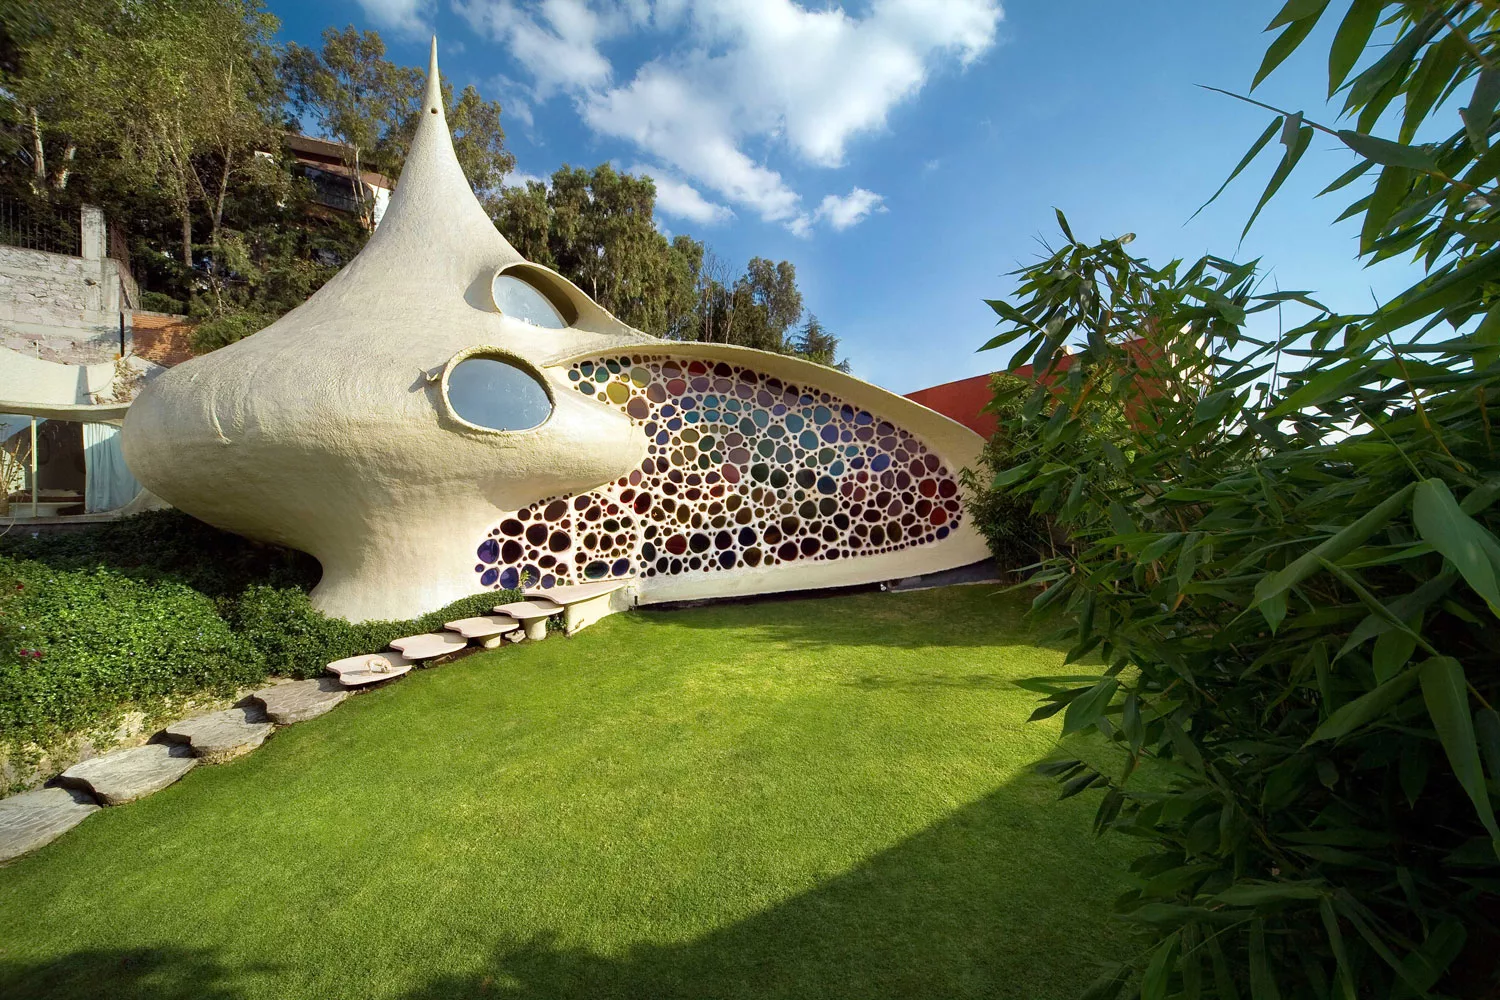 Foto della casa a forma di nautilus in Messico